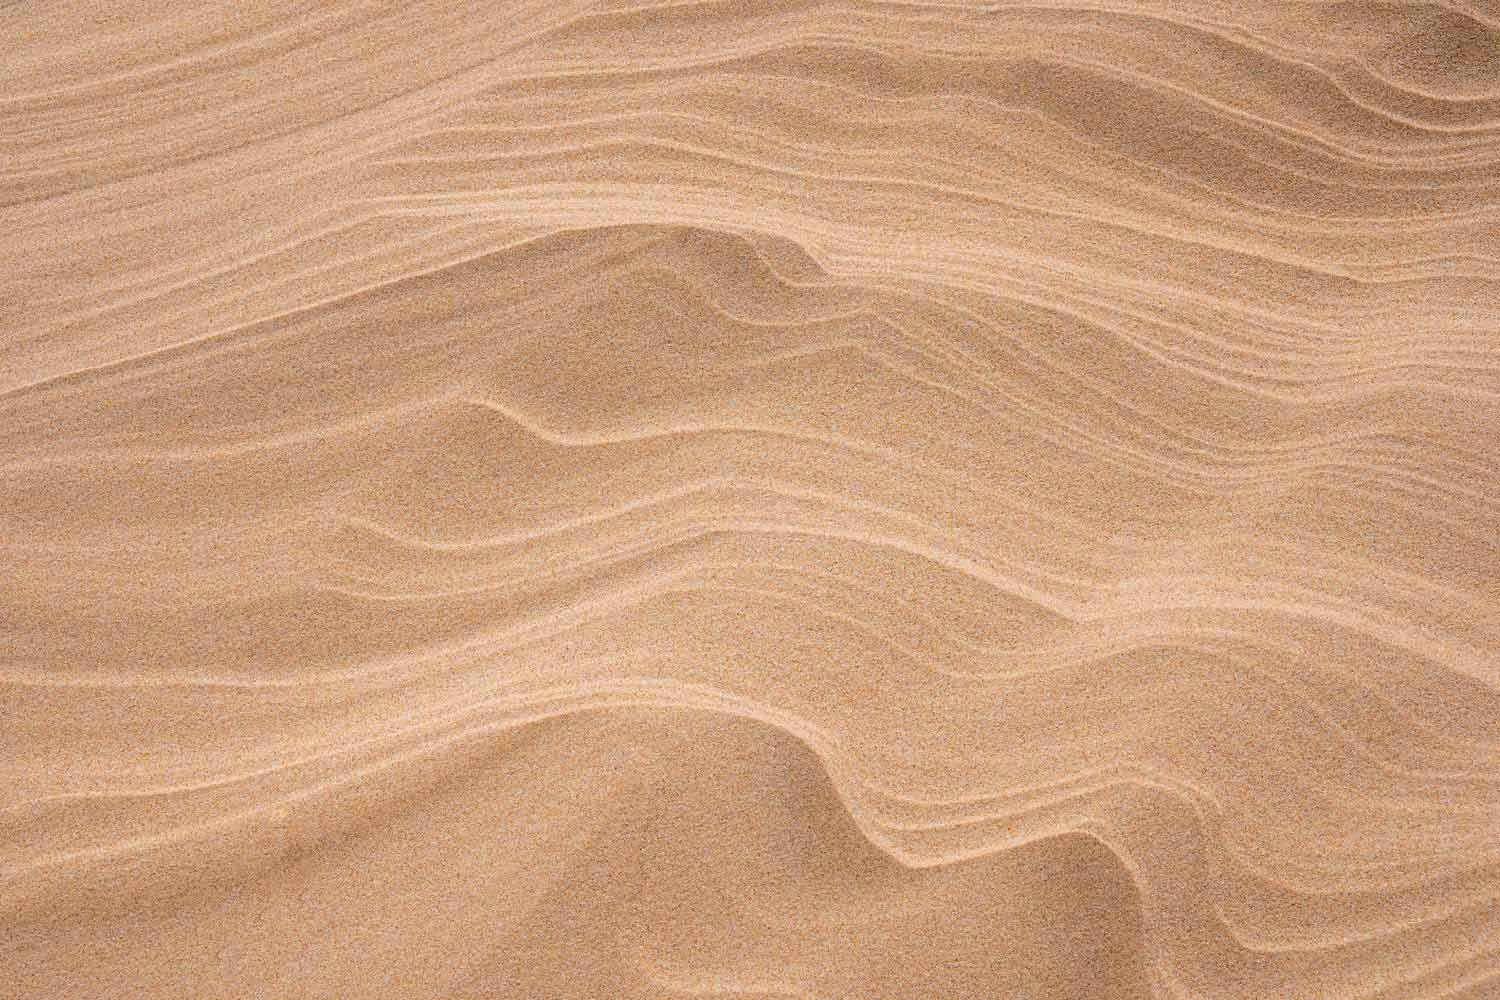 Moduleo sols en vinyle - Roots collection - styl Évasion dans le désert - image atmosphérique